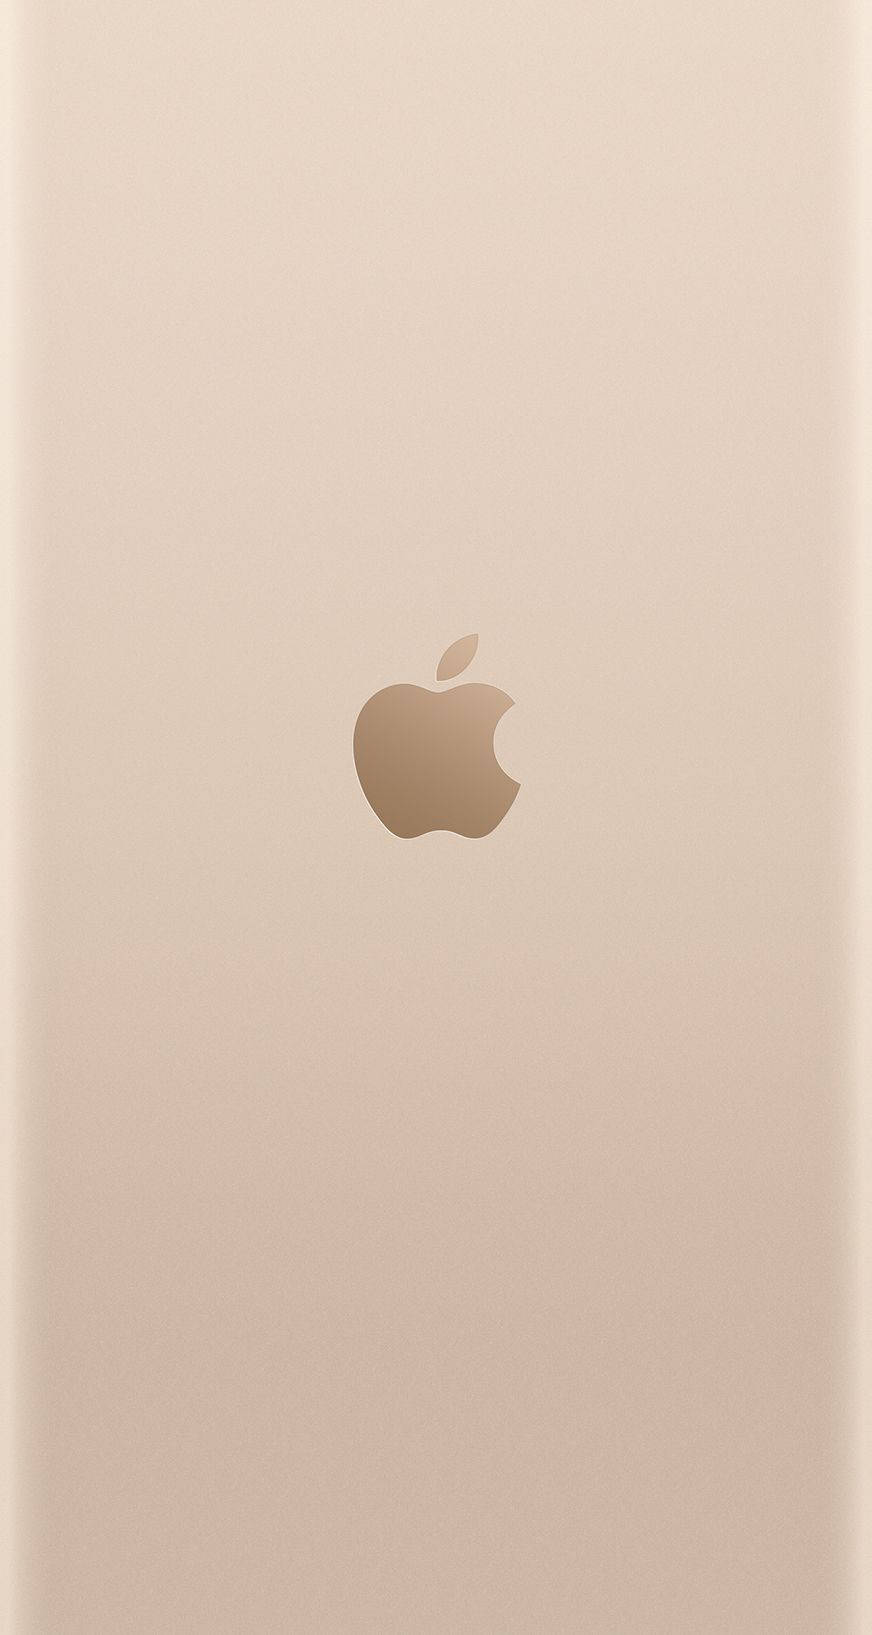 Unaimagen De Un Apple Iphone 6s Dorado Fondo de pantalla